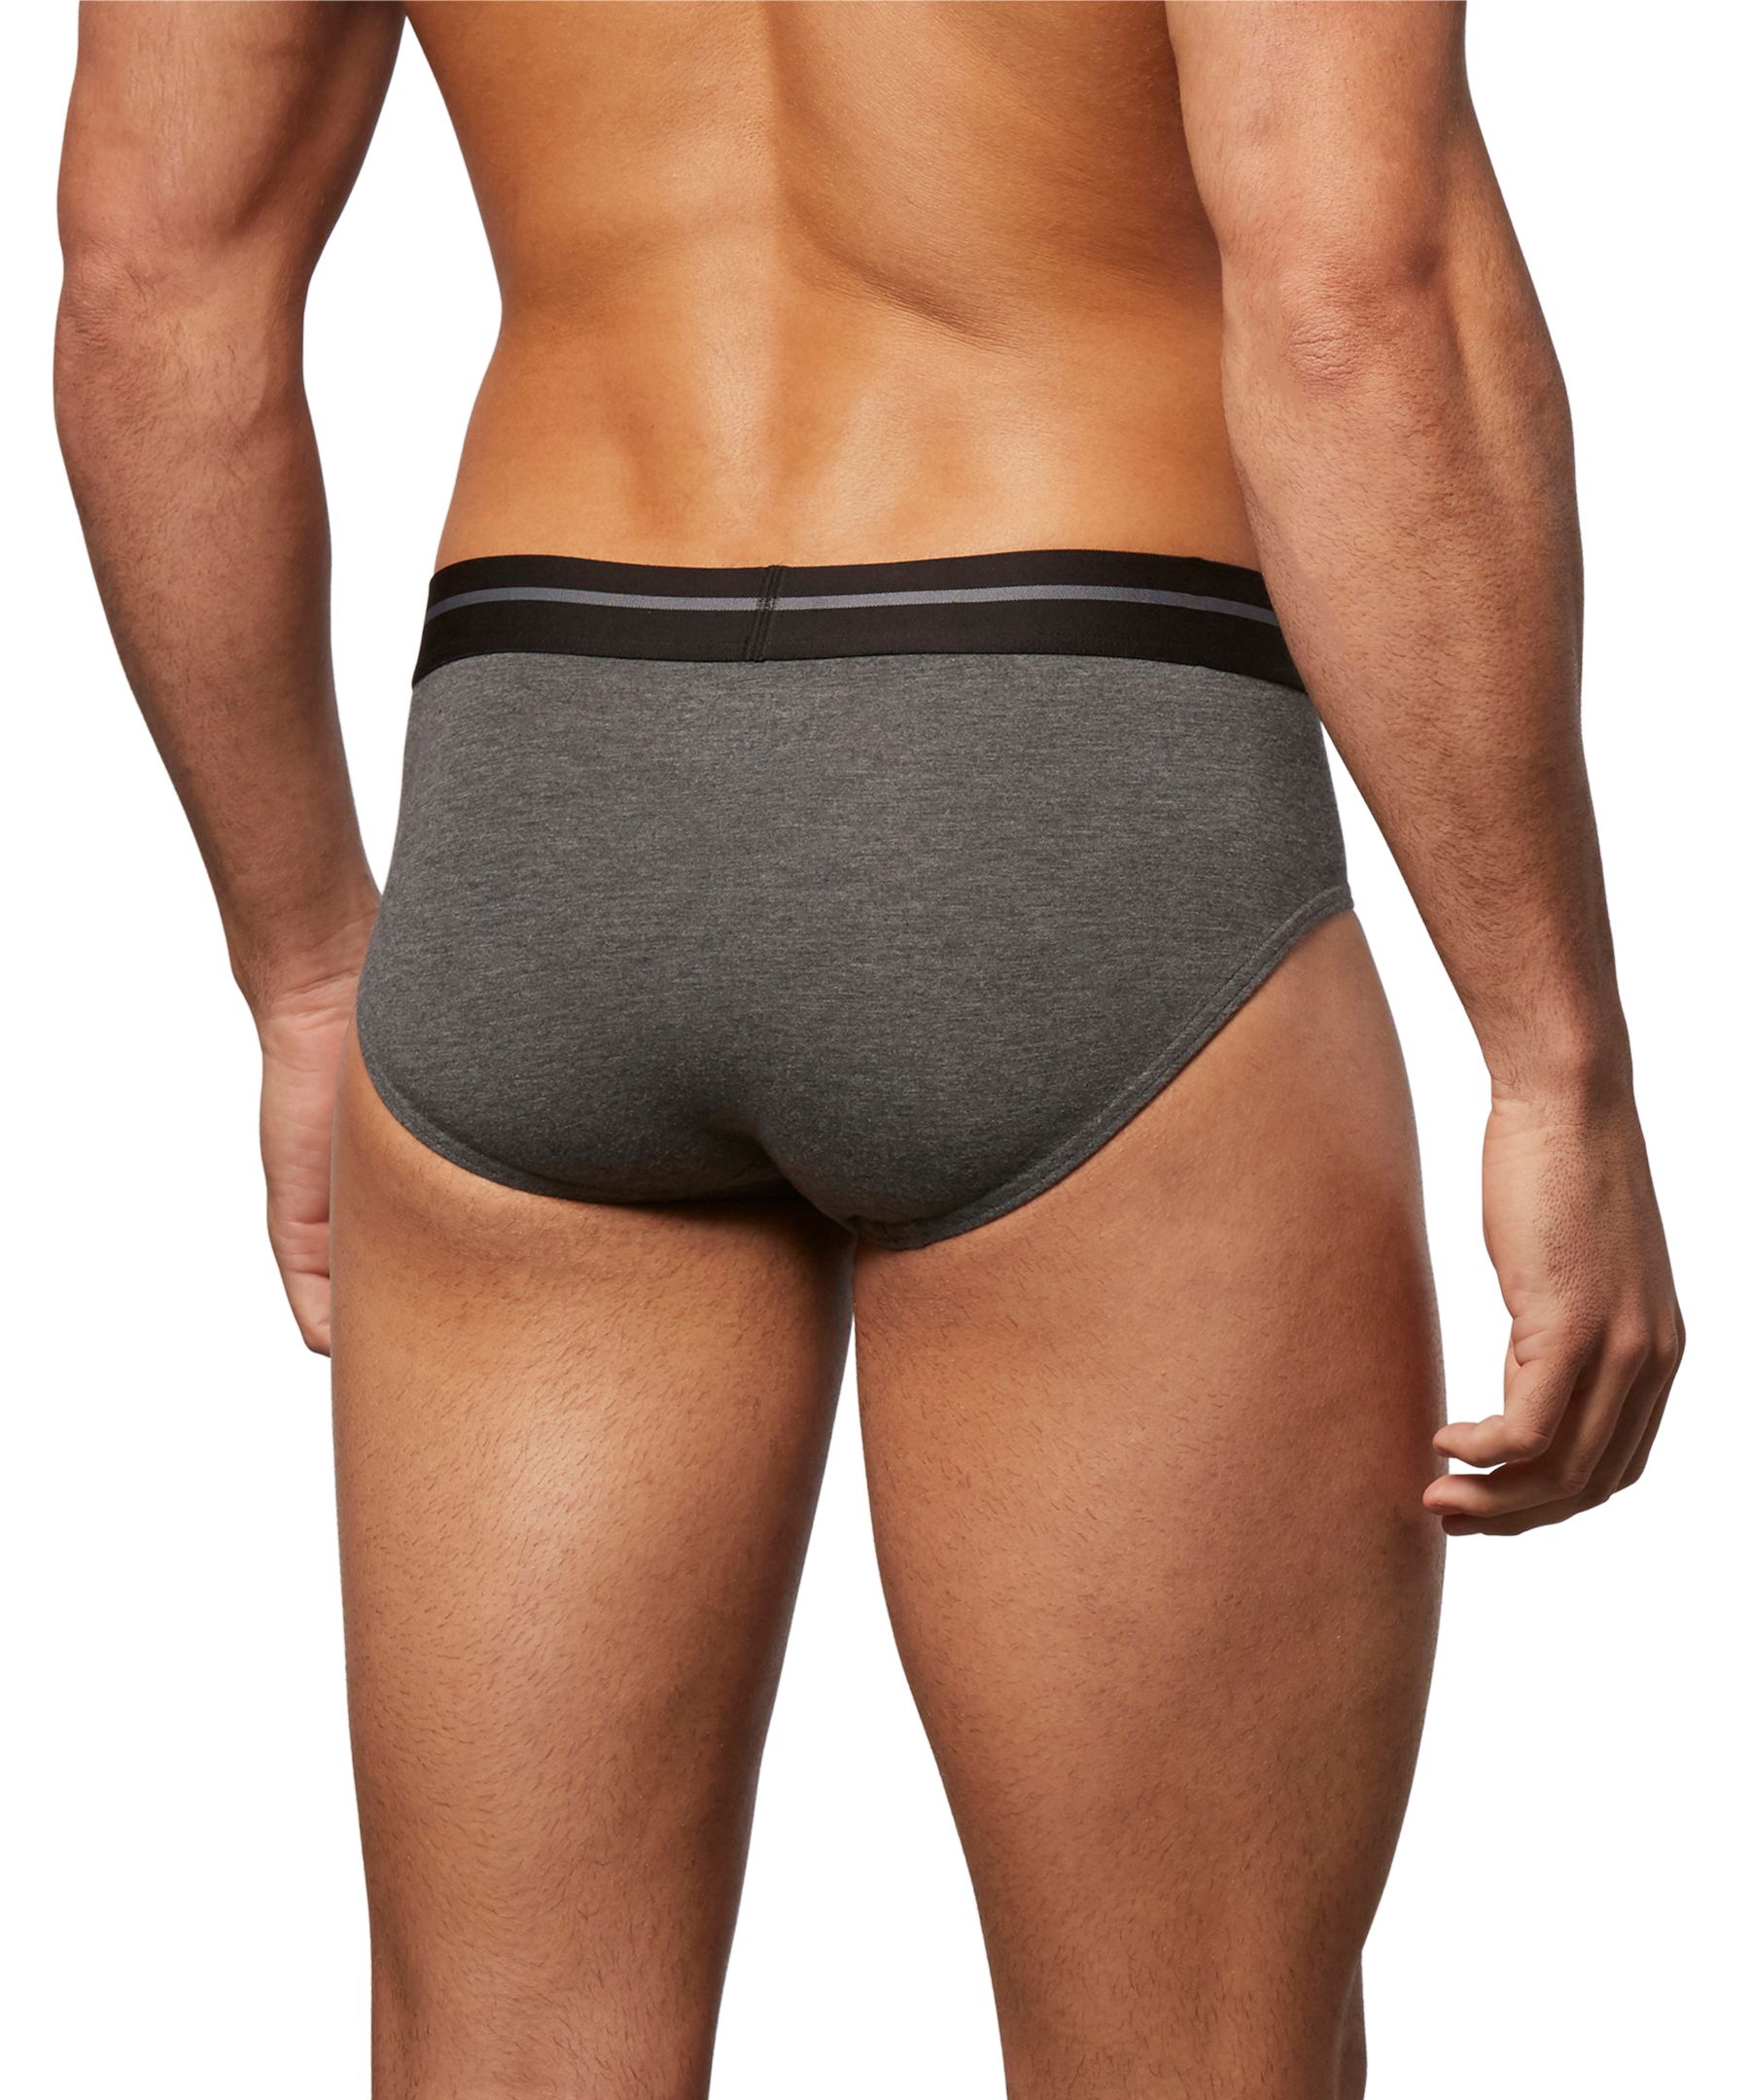 Denver Hayes Men's All Day Comfort Trunk Brief Underwear